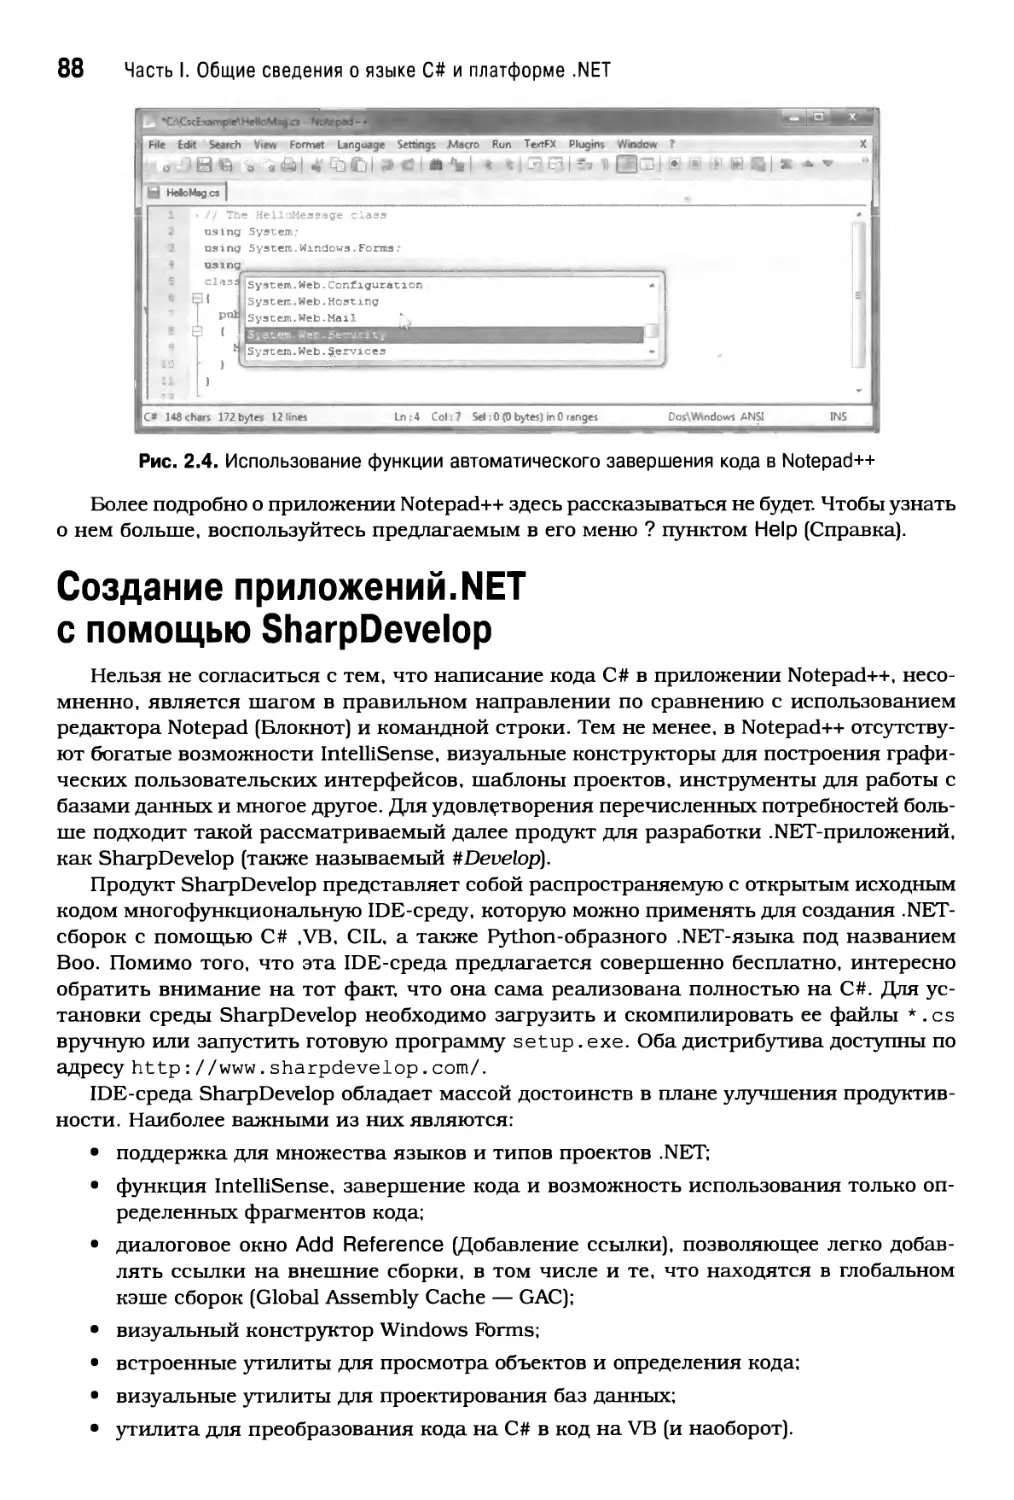 Создание приложений.NET с помощью SharpDevelop